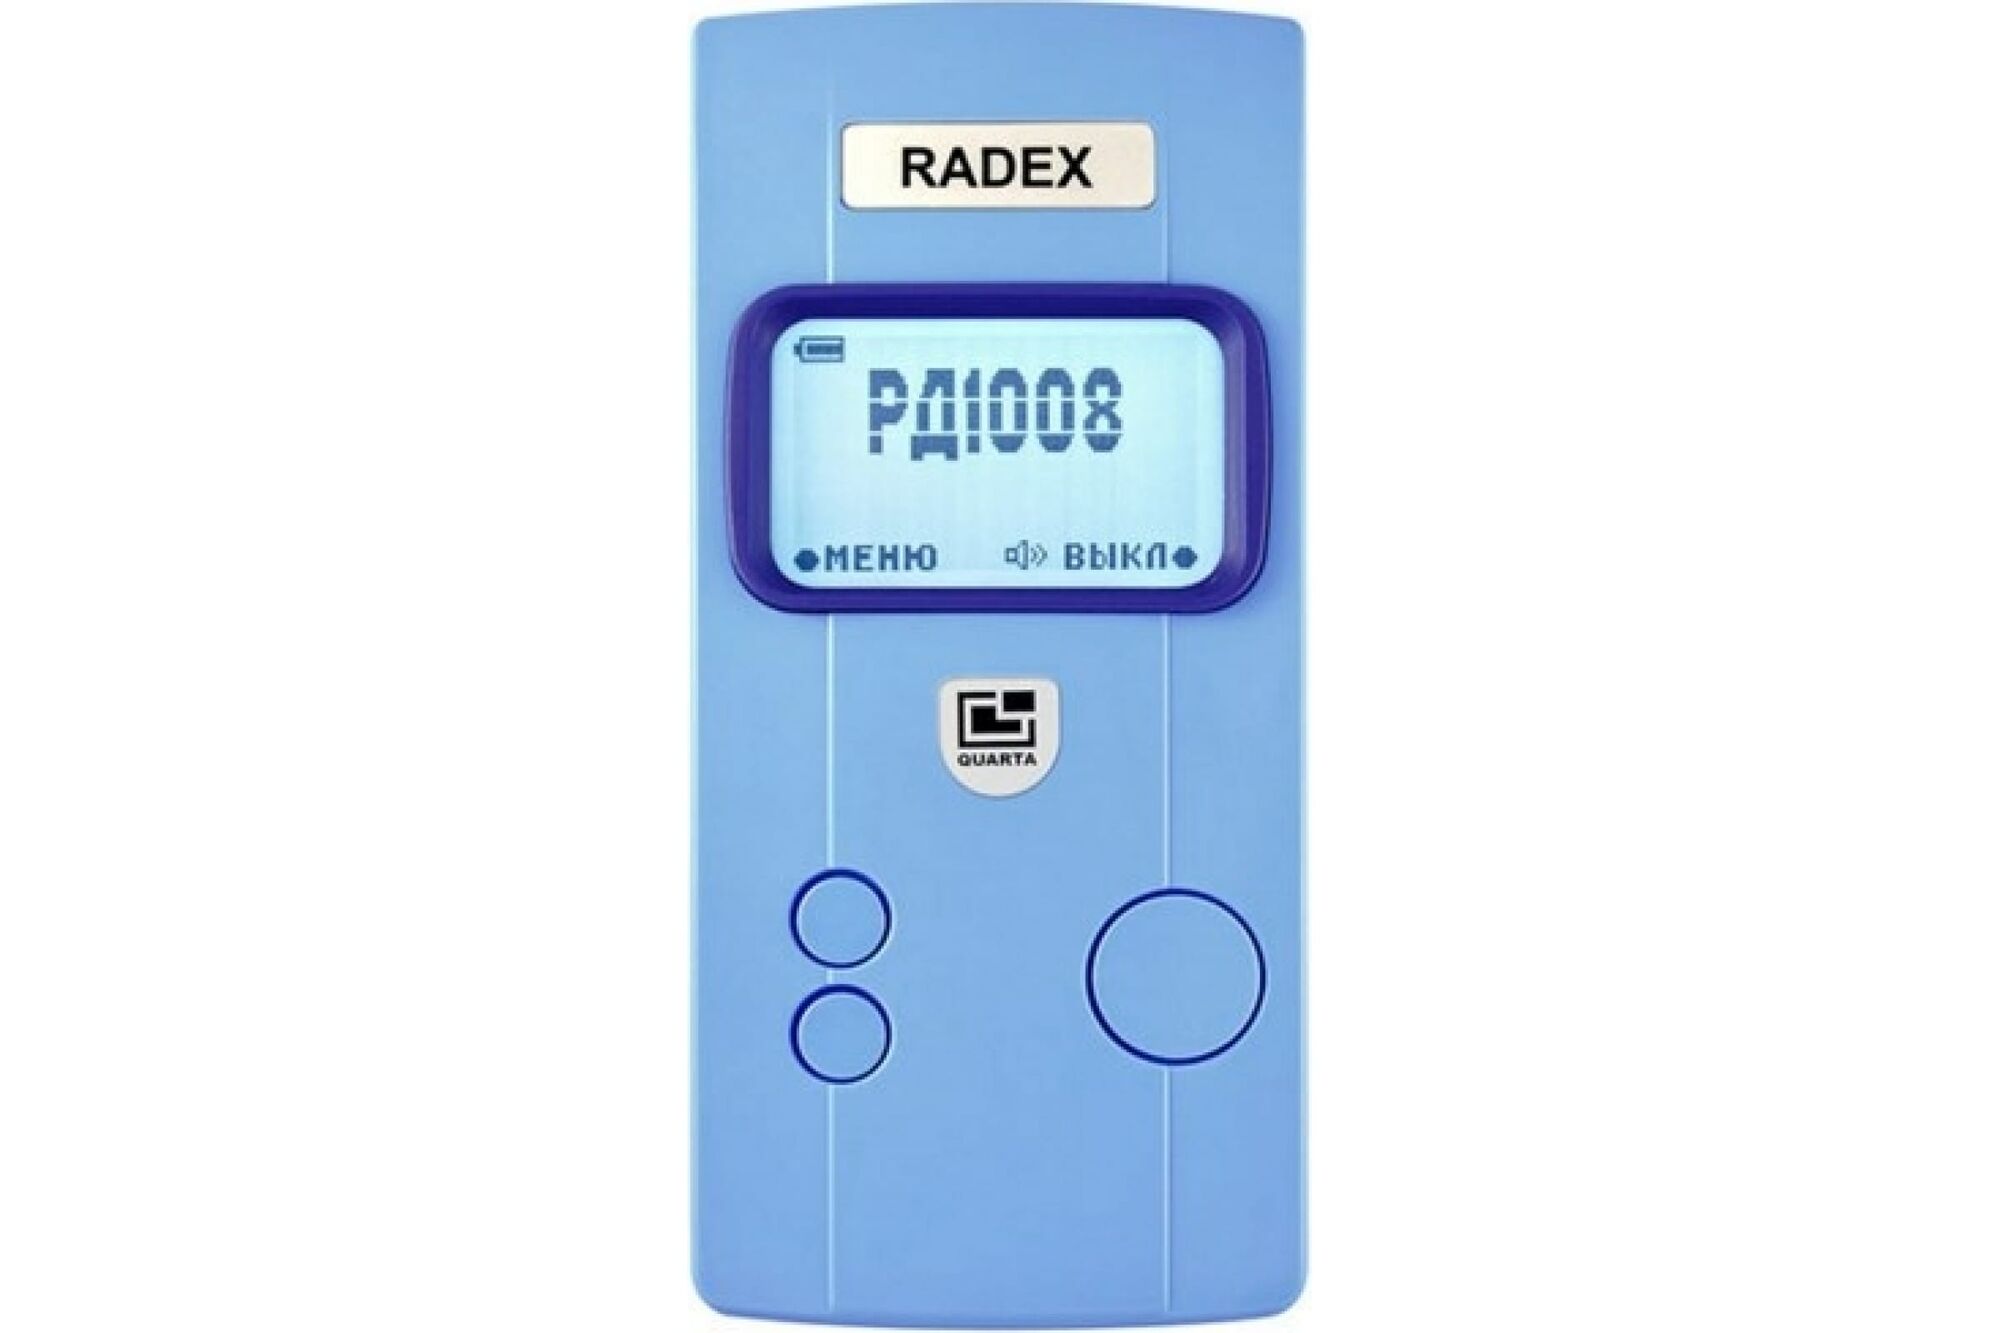 Дозиметр / Индикатор радиоактивности Radex RD1008